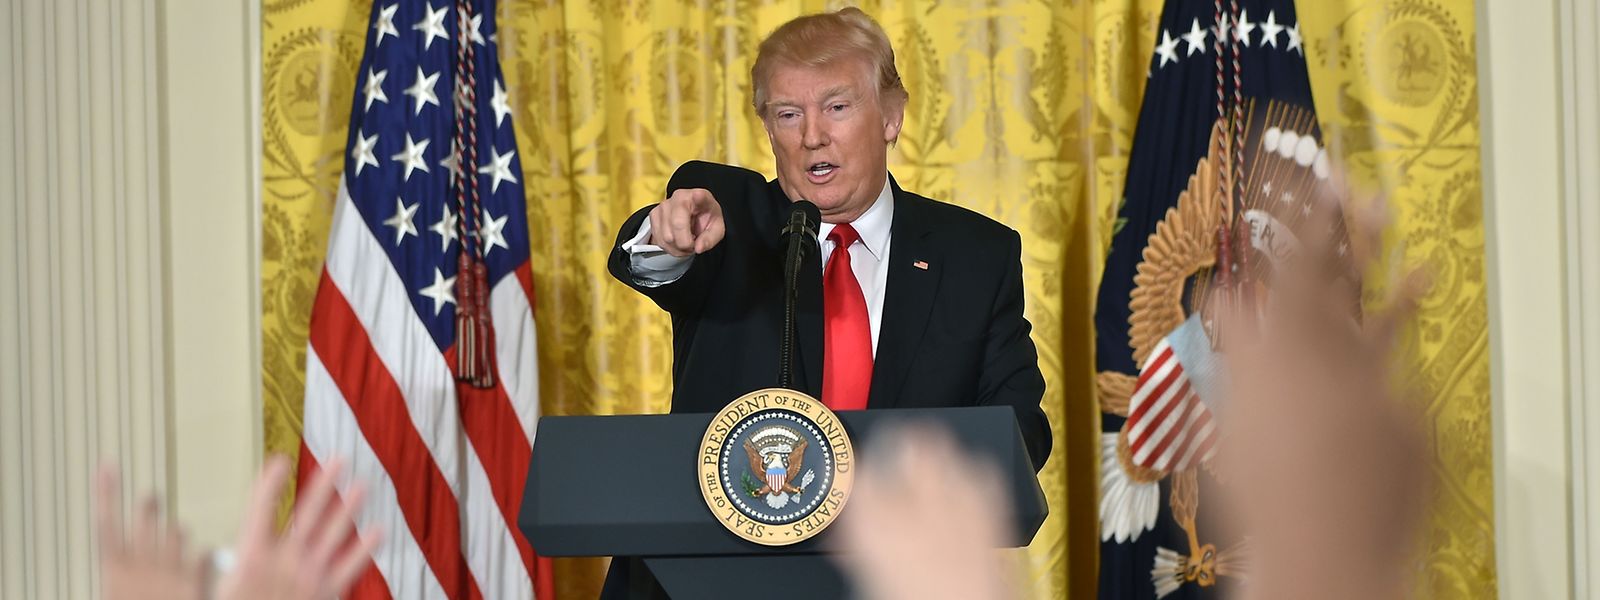 Donald Trump bei der Pressekonferenz in Washington.